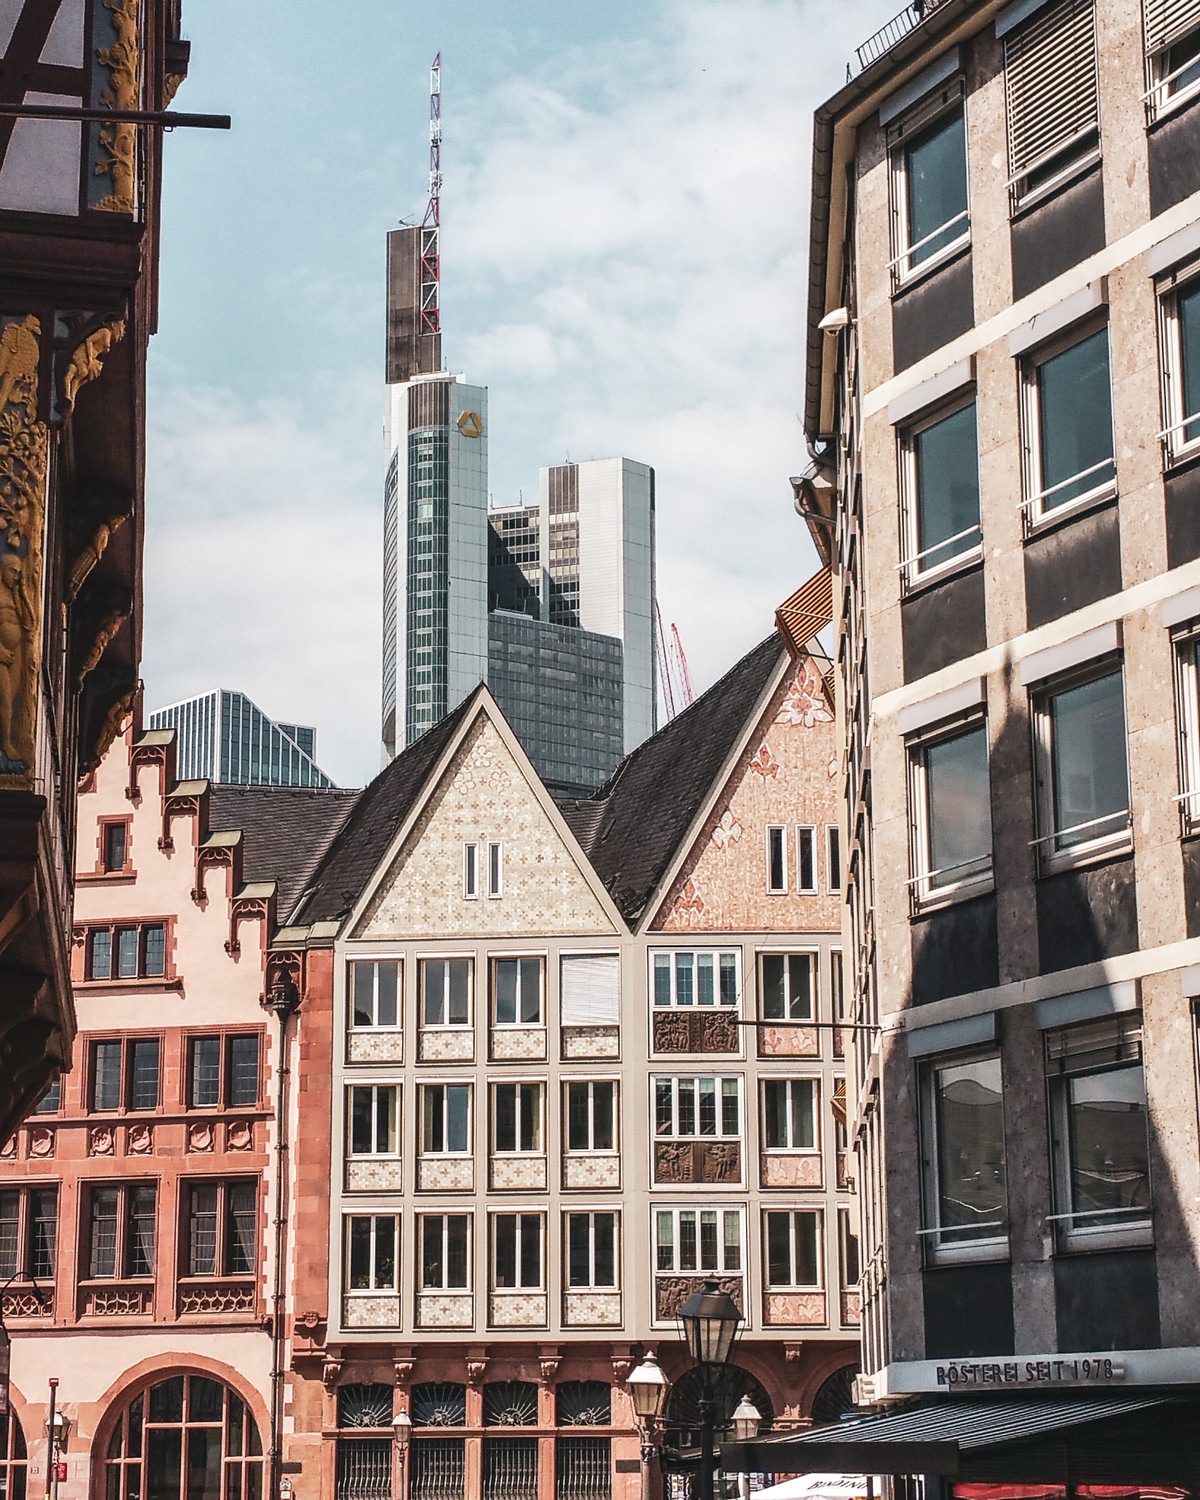 Die besten Foto Spots Frankfurt Römer und Altstadt